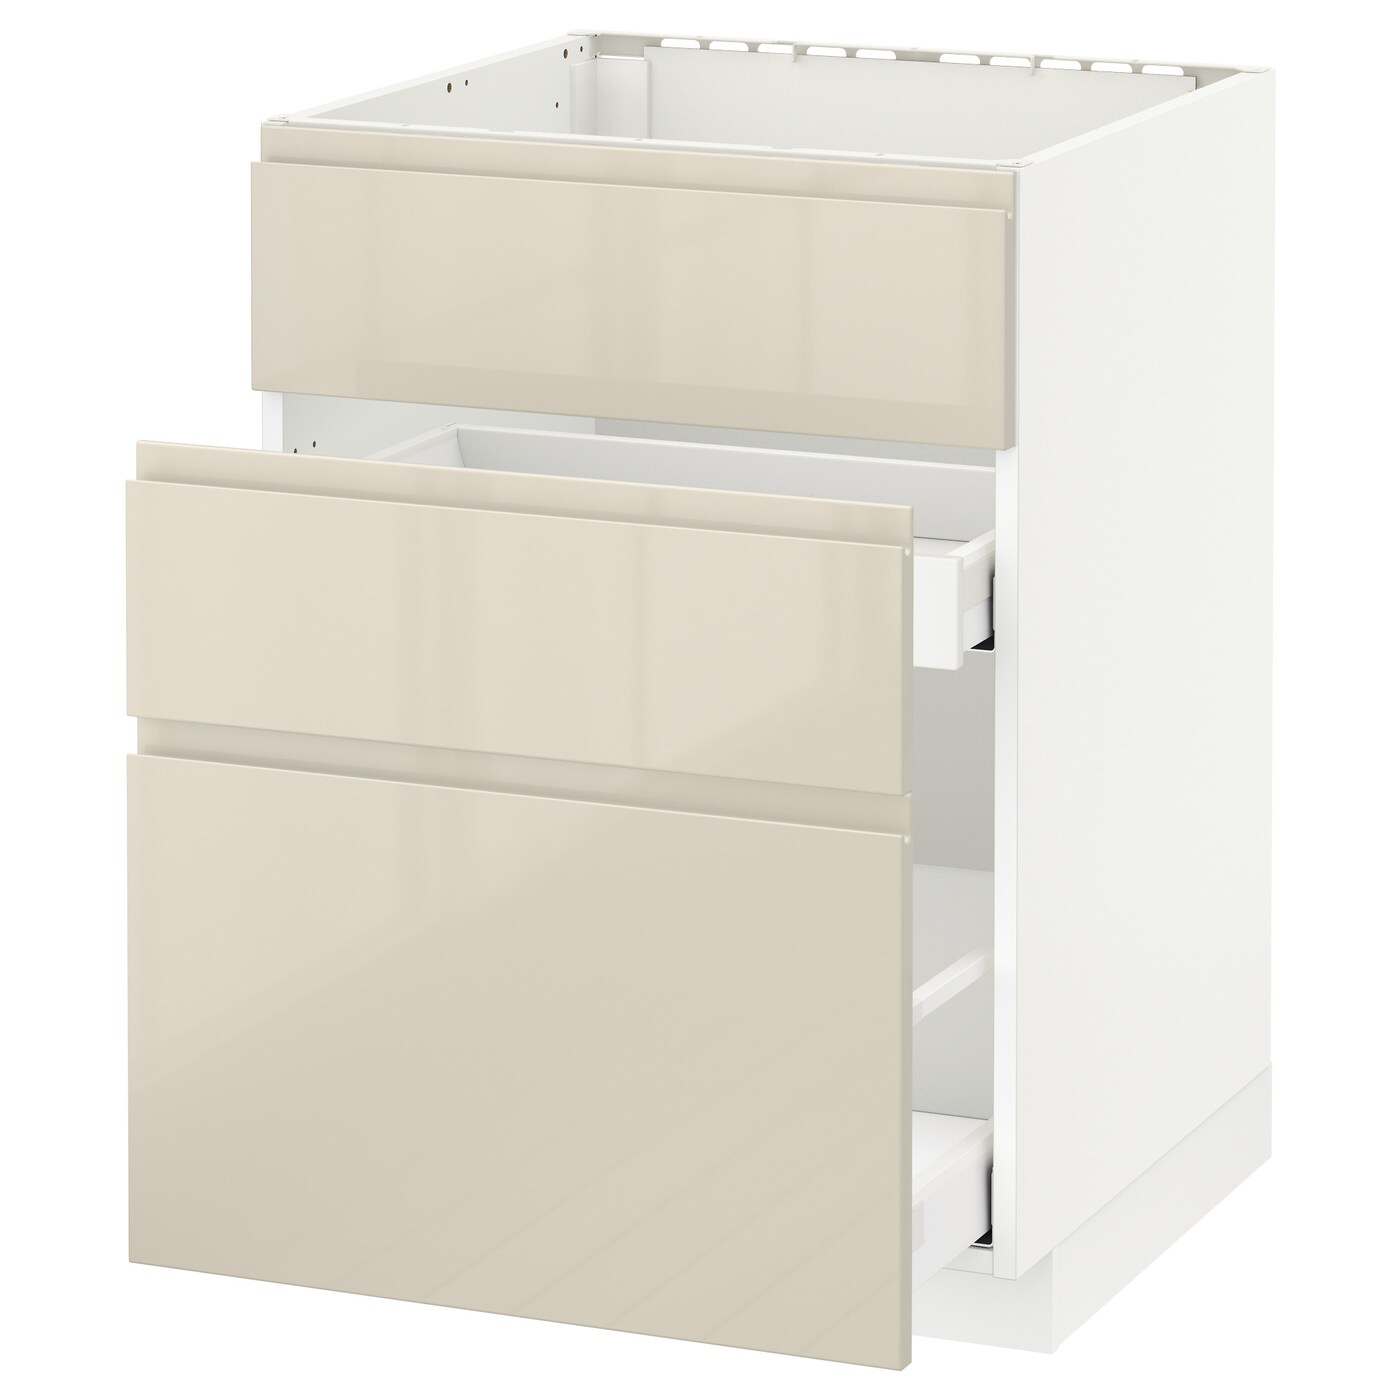 Напольный кухонный шкаф  - IKEA METOD MAXIMERA, 88x62,1x60см, белый/бежевый, МЕТОД МАКСИМЕРА ИКЕА